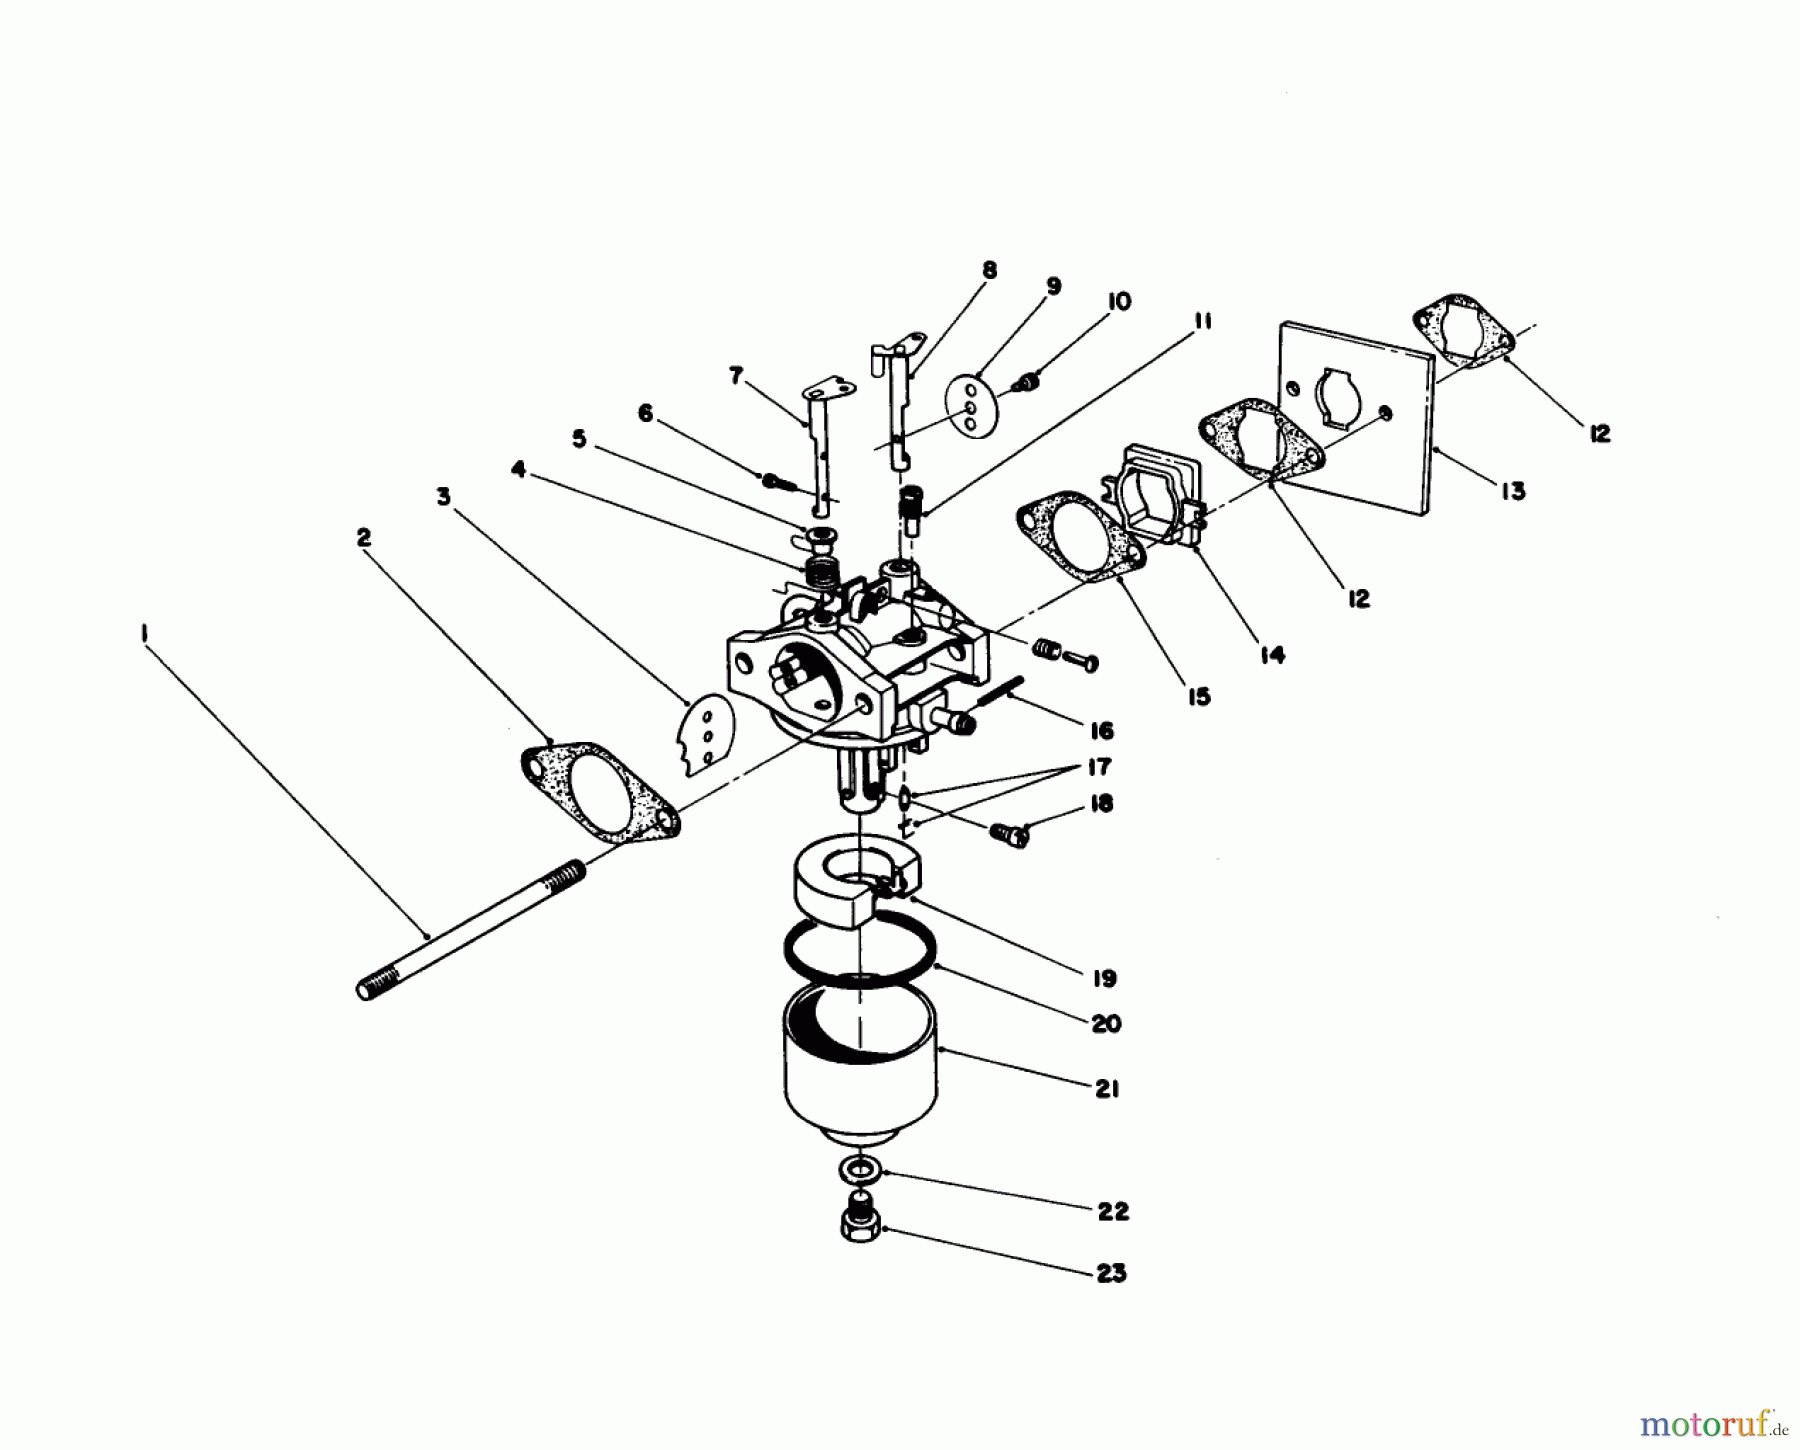  Toro Neu Mowers, Walk-Behind Seite 1 20745C - Toro Lawnmower, 1988 (8000001-8999999) CARBURETOR ASSEMBLY (ENGINE NO. 47PG6)